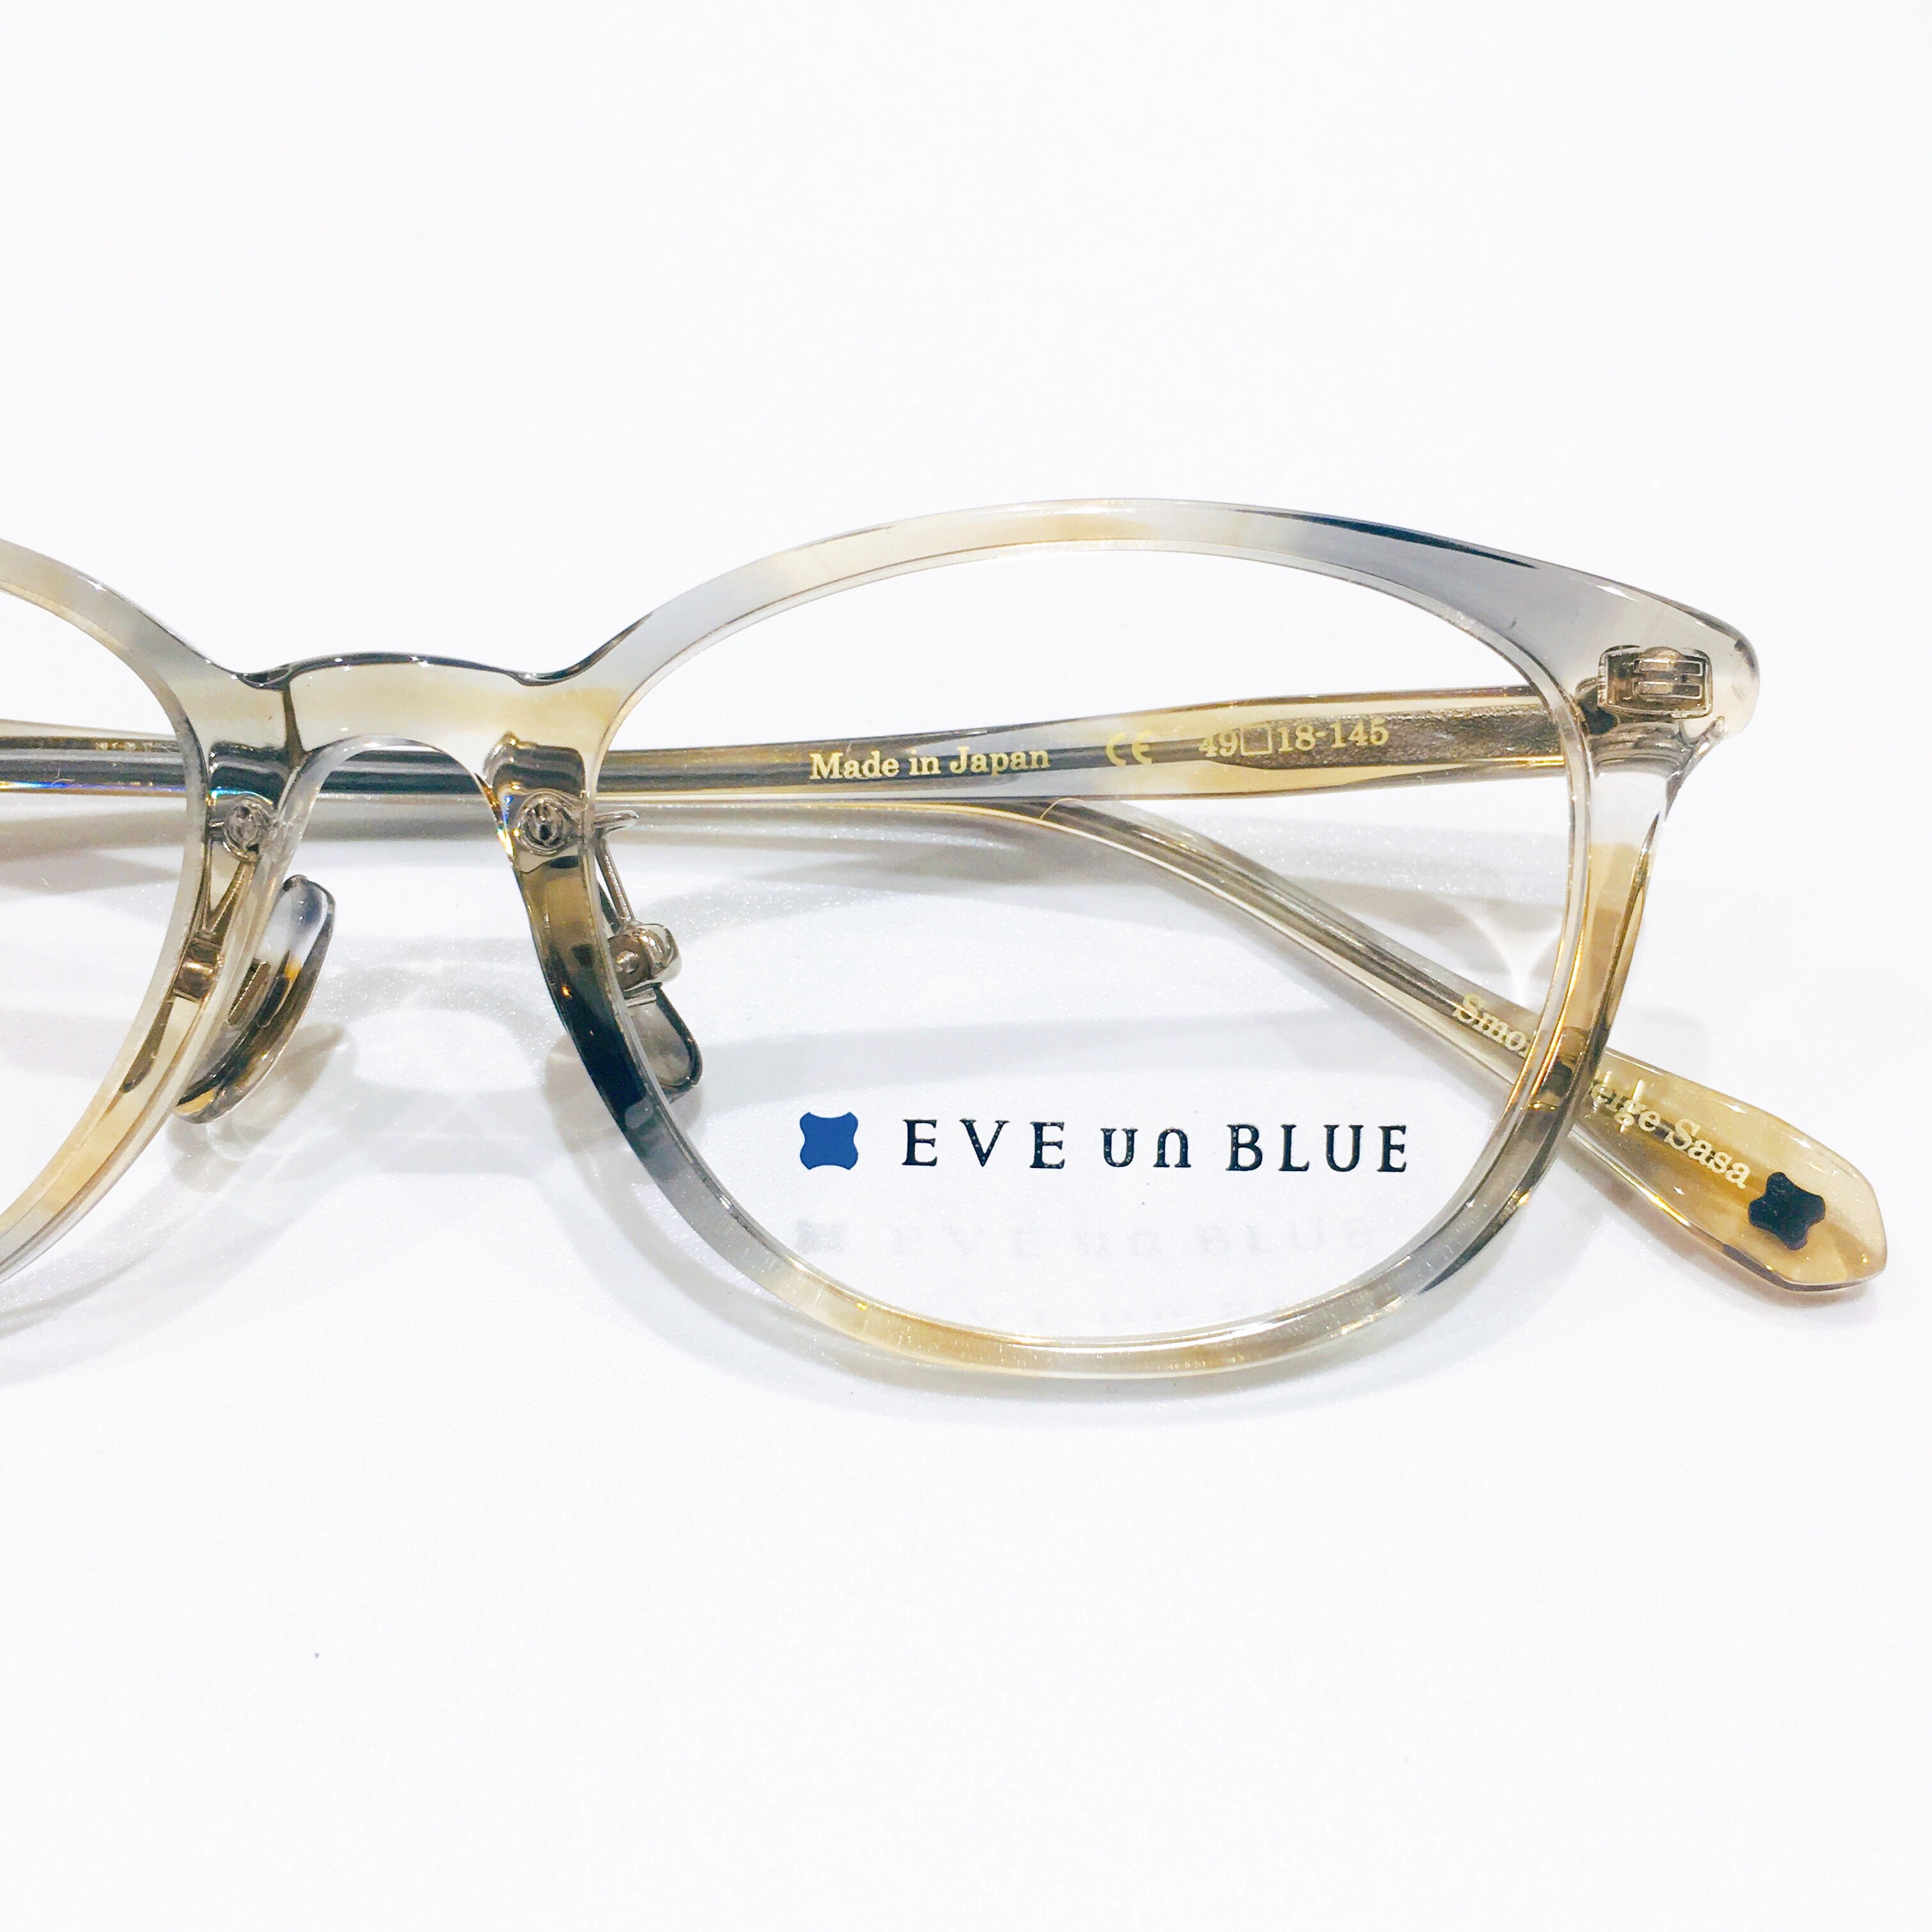 【EVE un BLUE】自然の色から作った透けカラーがカワイイメガネ♪